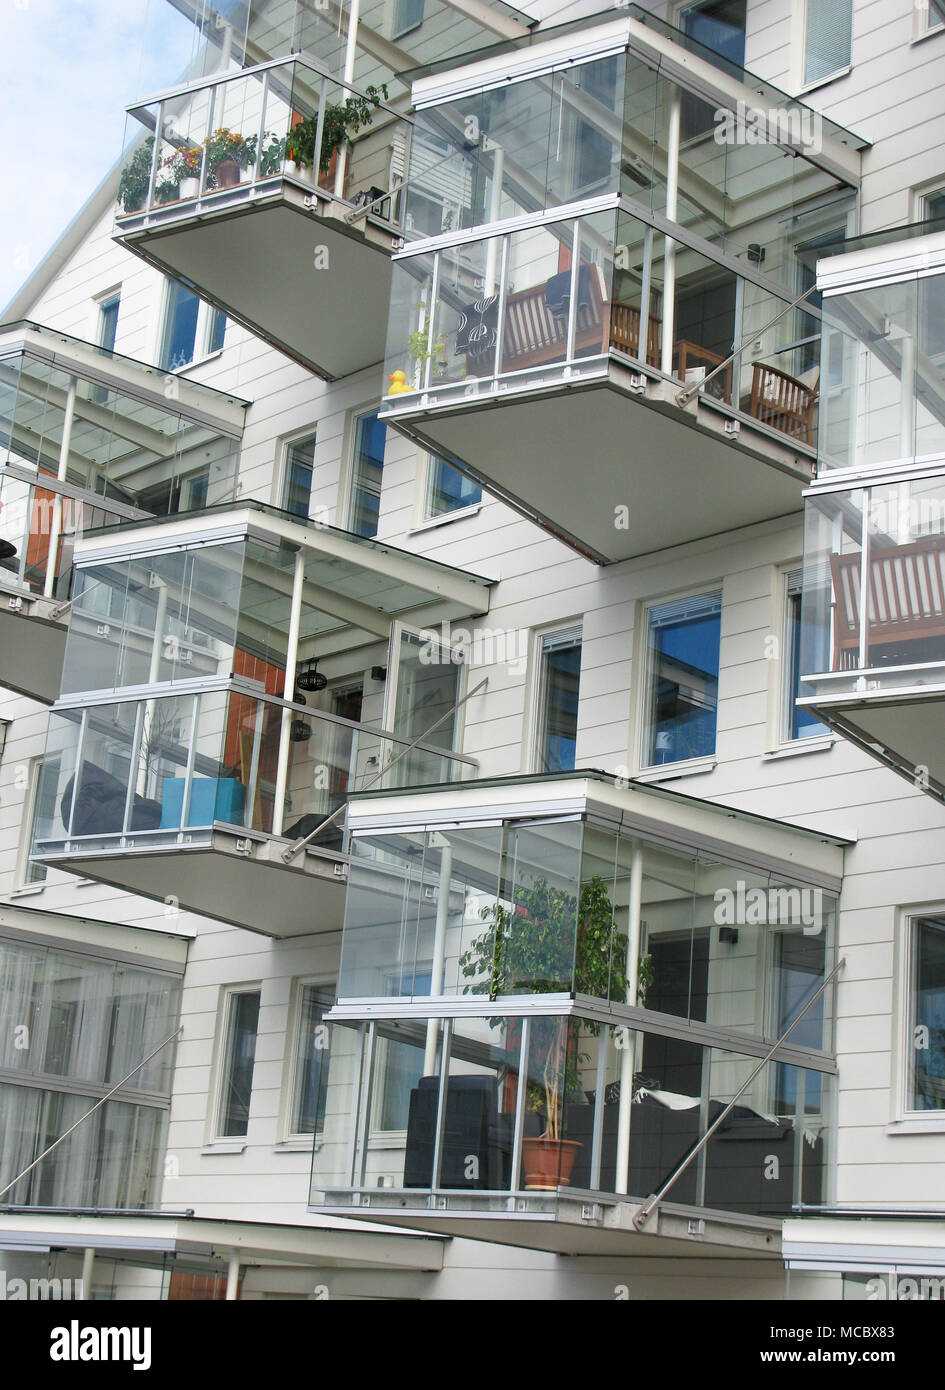 Newly built apartments on Lidingö with their glazed balconies Stock Photo